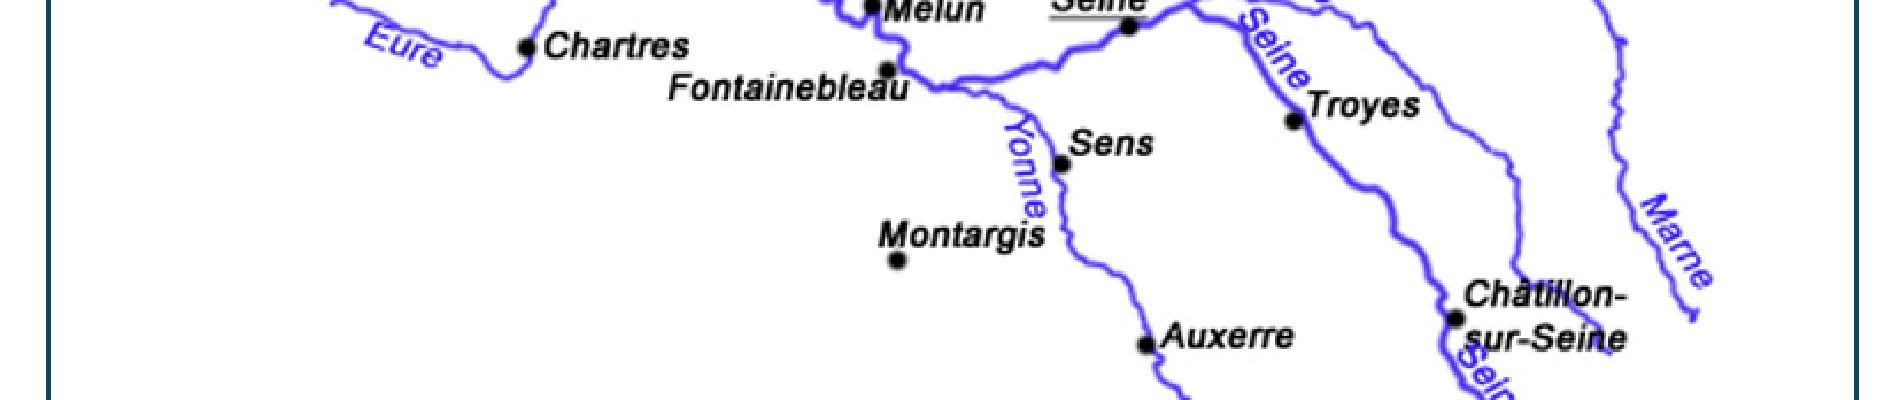 Point of interest Nogent-sur-Seine - Nogent-sur-Seine 2 - Photo